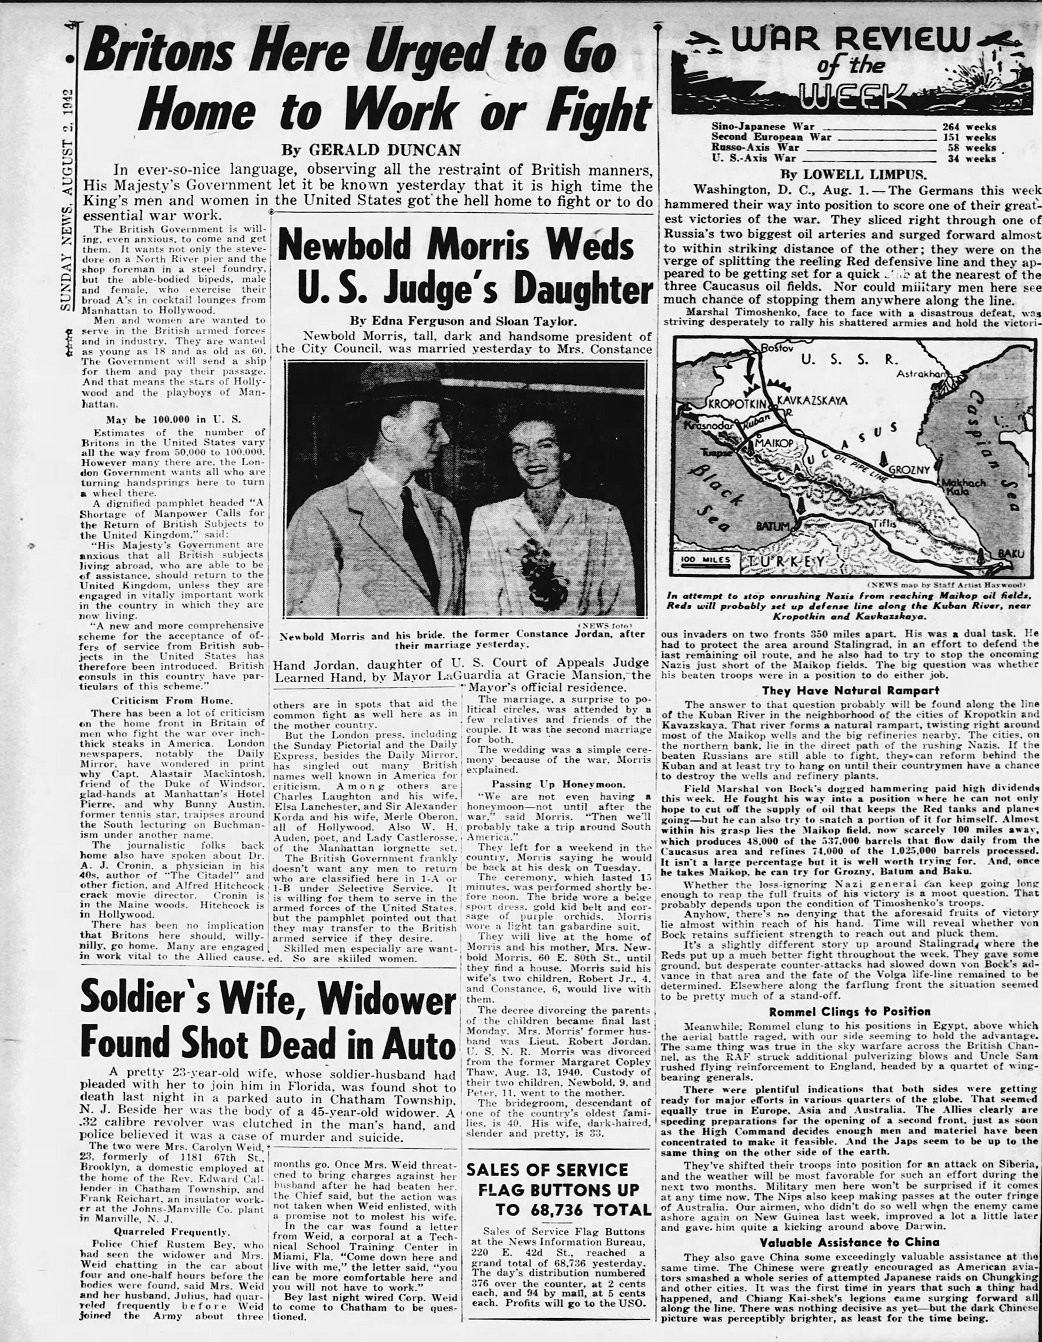 Daily_News_Sun__Aug_2__1942_(1).jpg